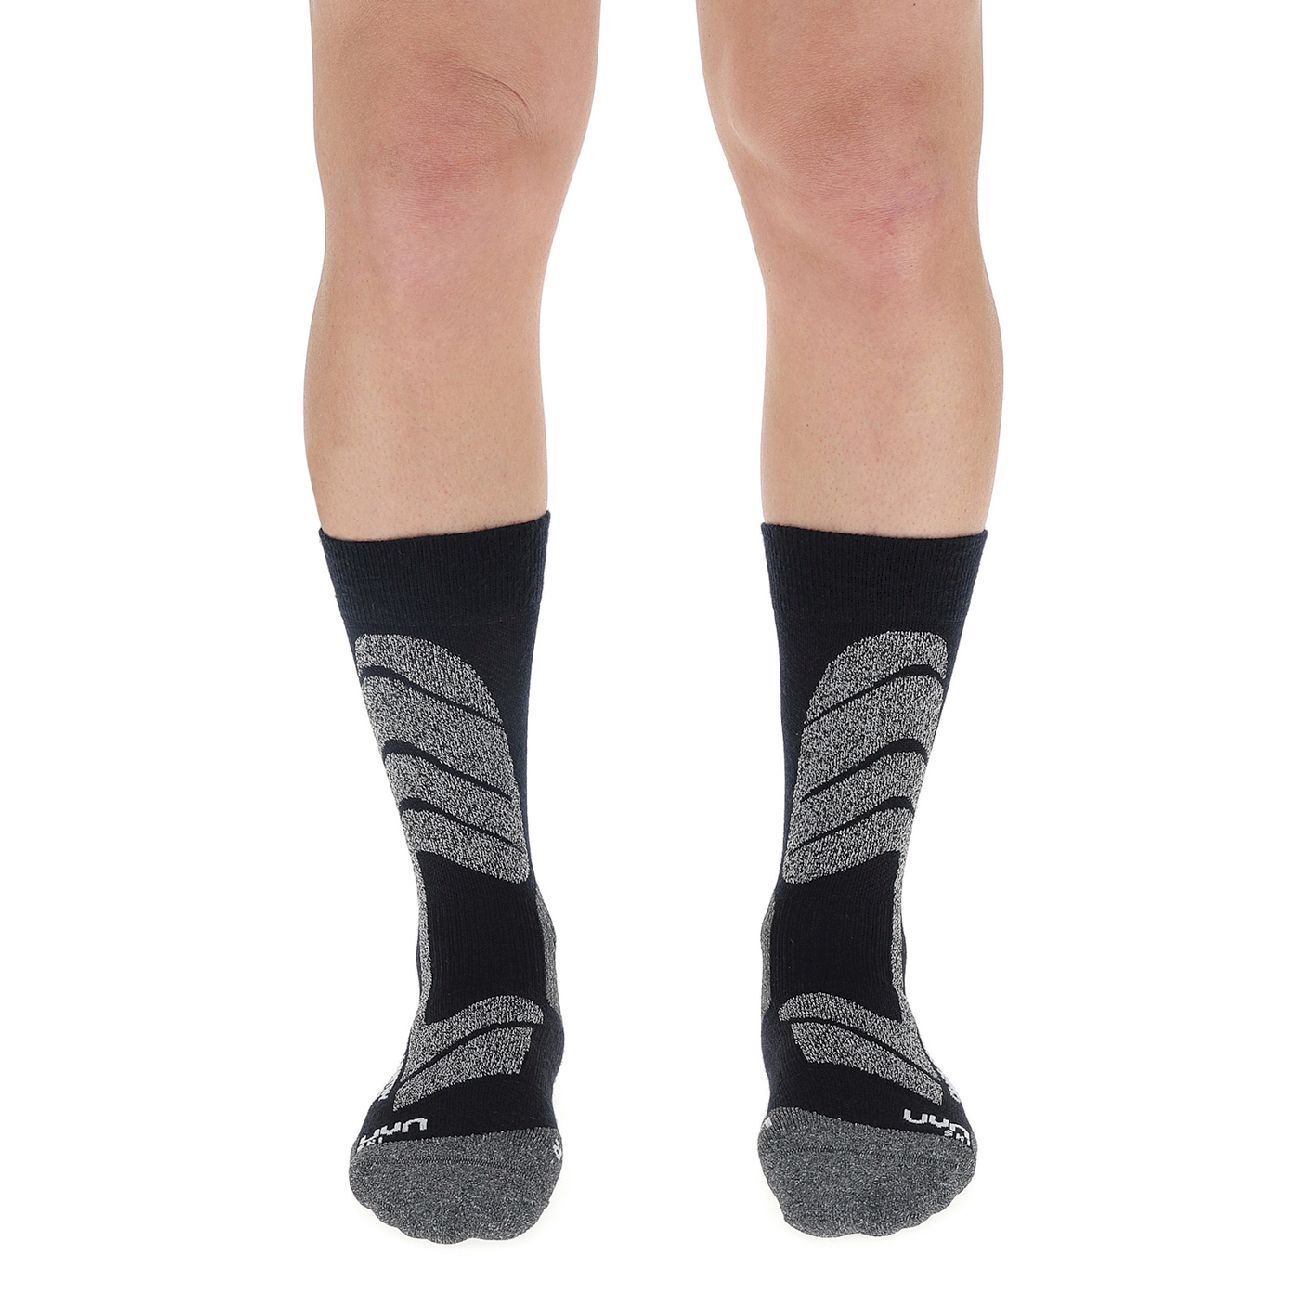 Uyn Ski Cross Country Socks - Calze da sci - Uomo